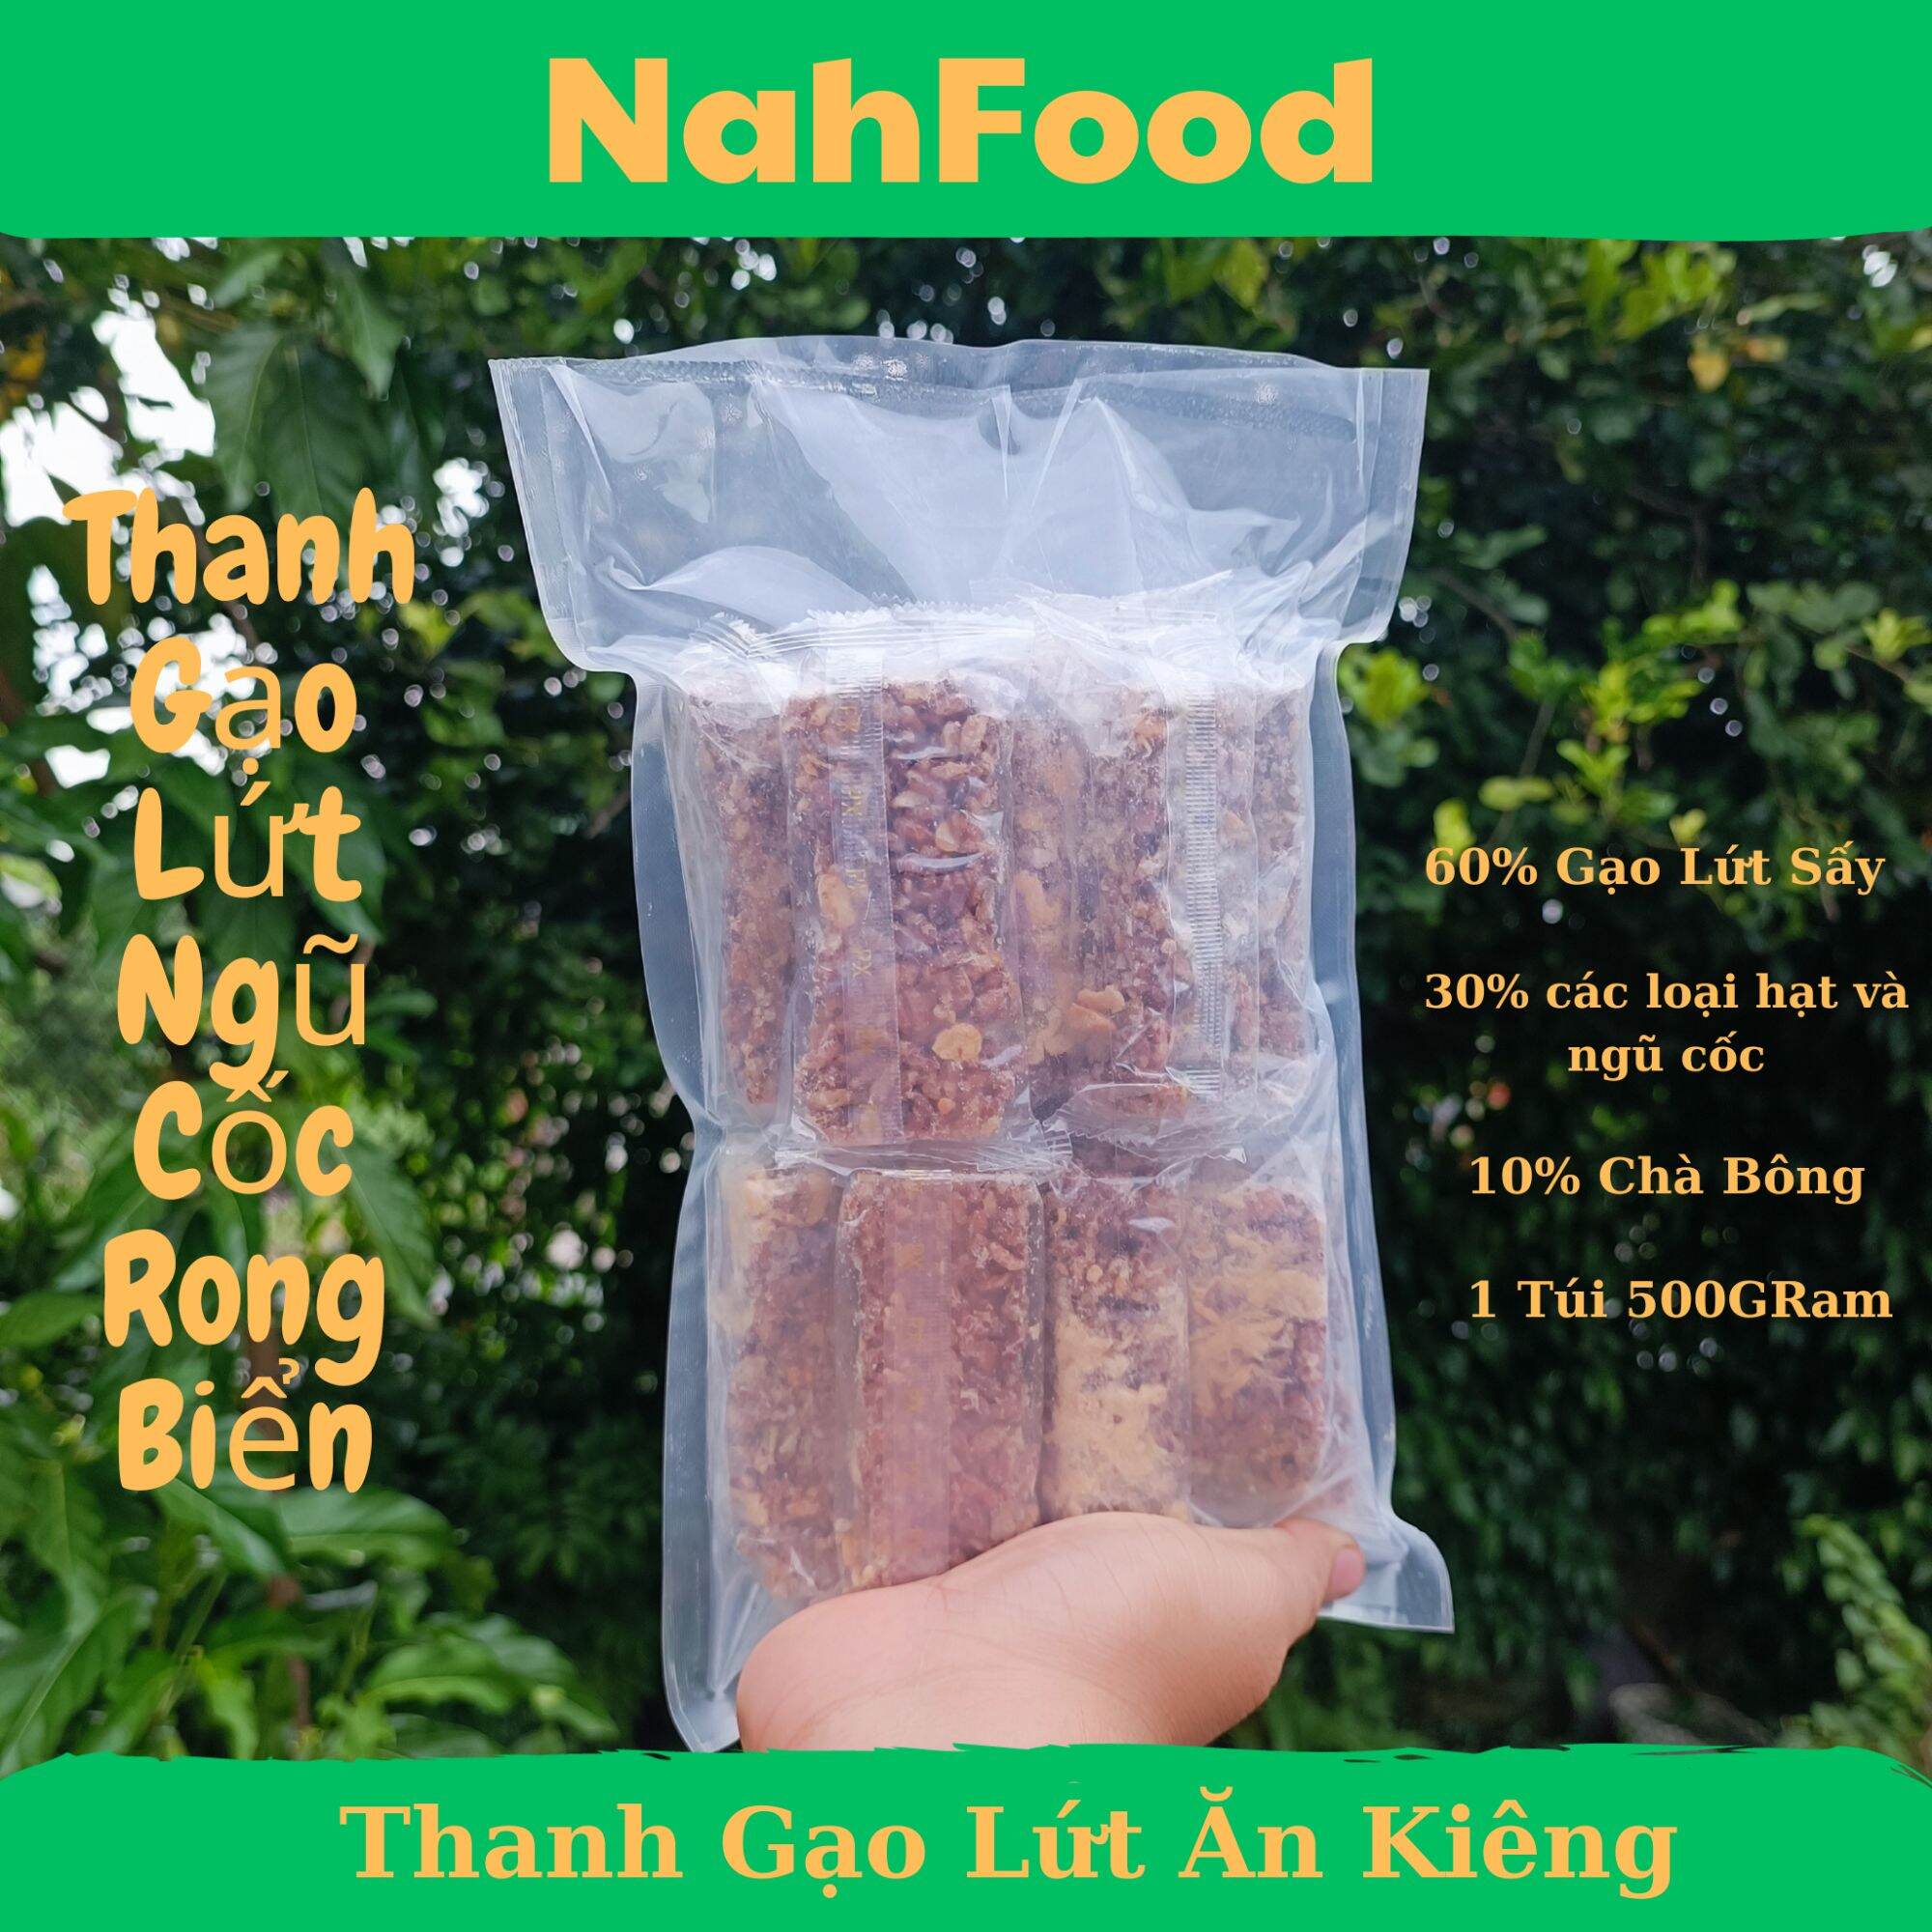 1 Túi 500Gr Thanh Gạo Lứt Dinh Dưỡng mix Chà Bông NahFood dành cho người